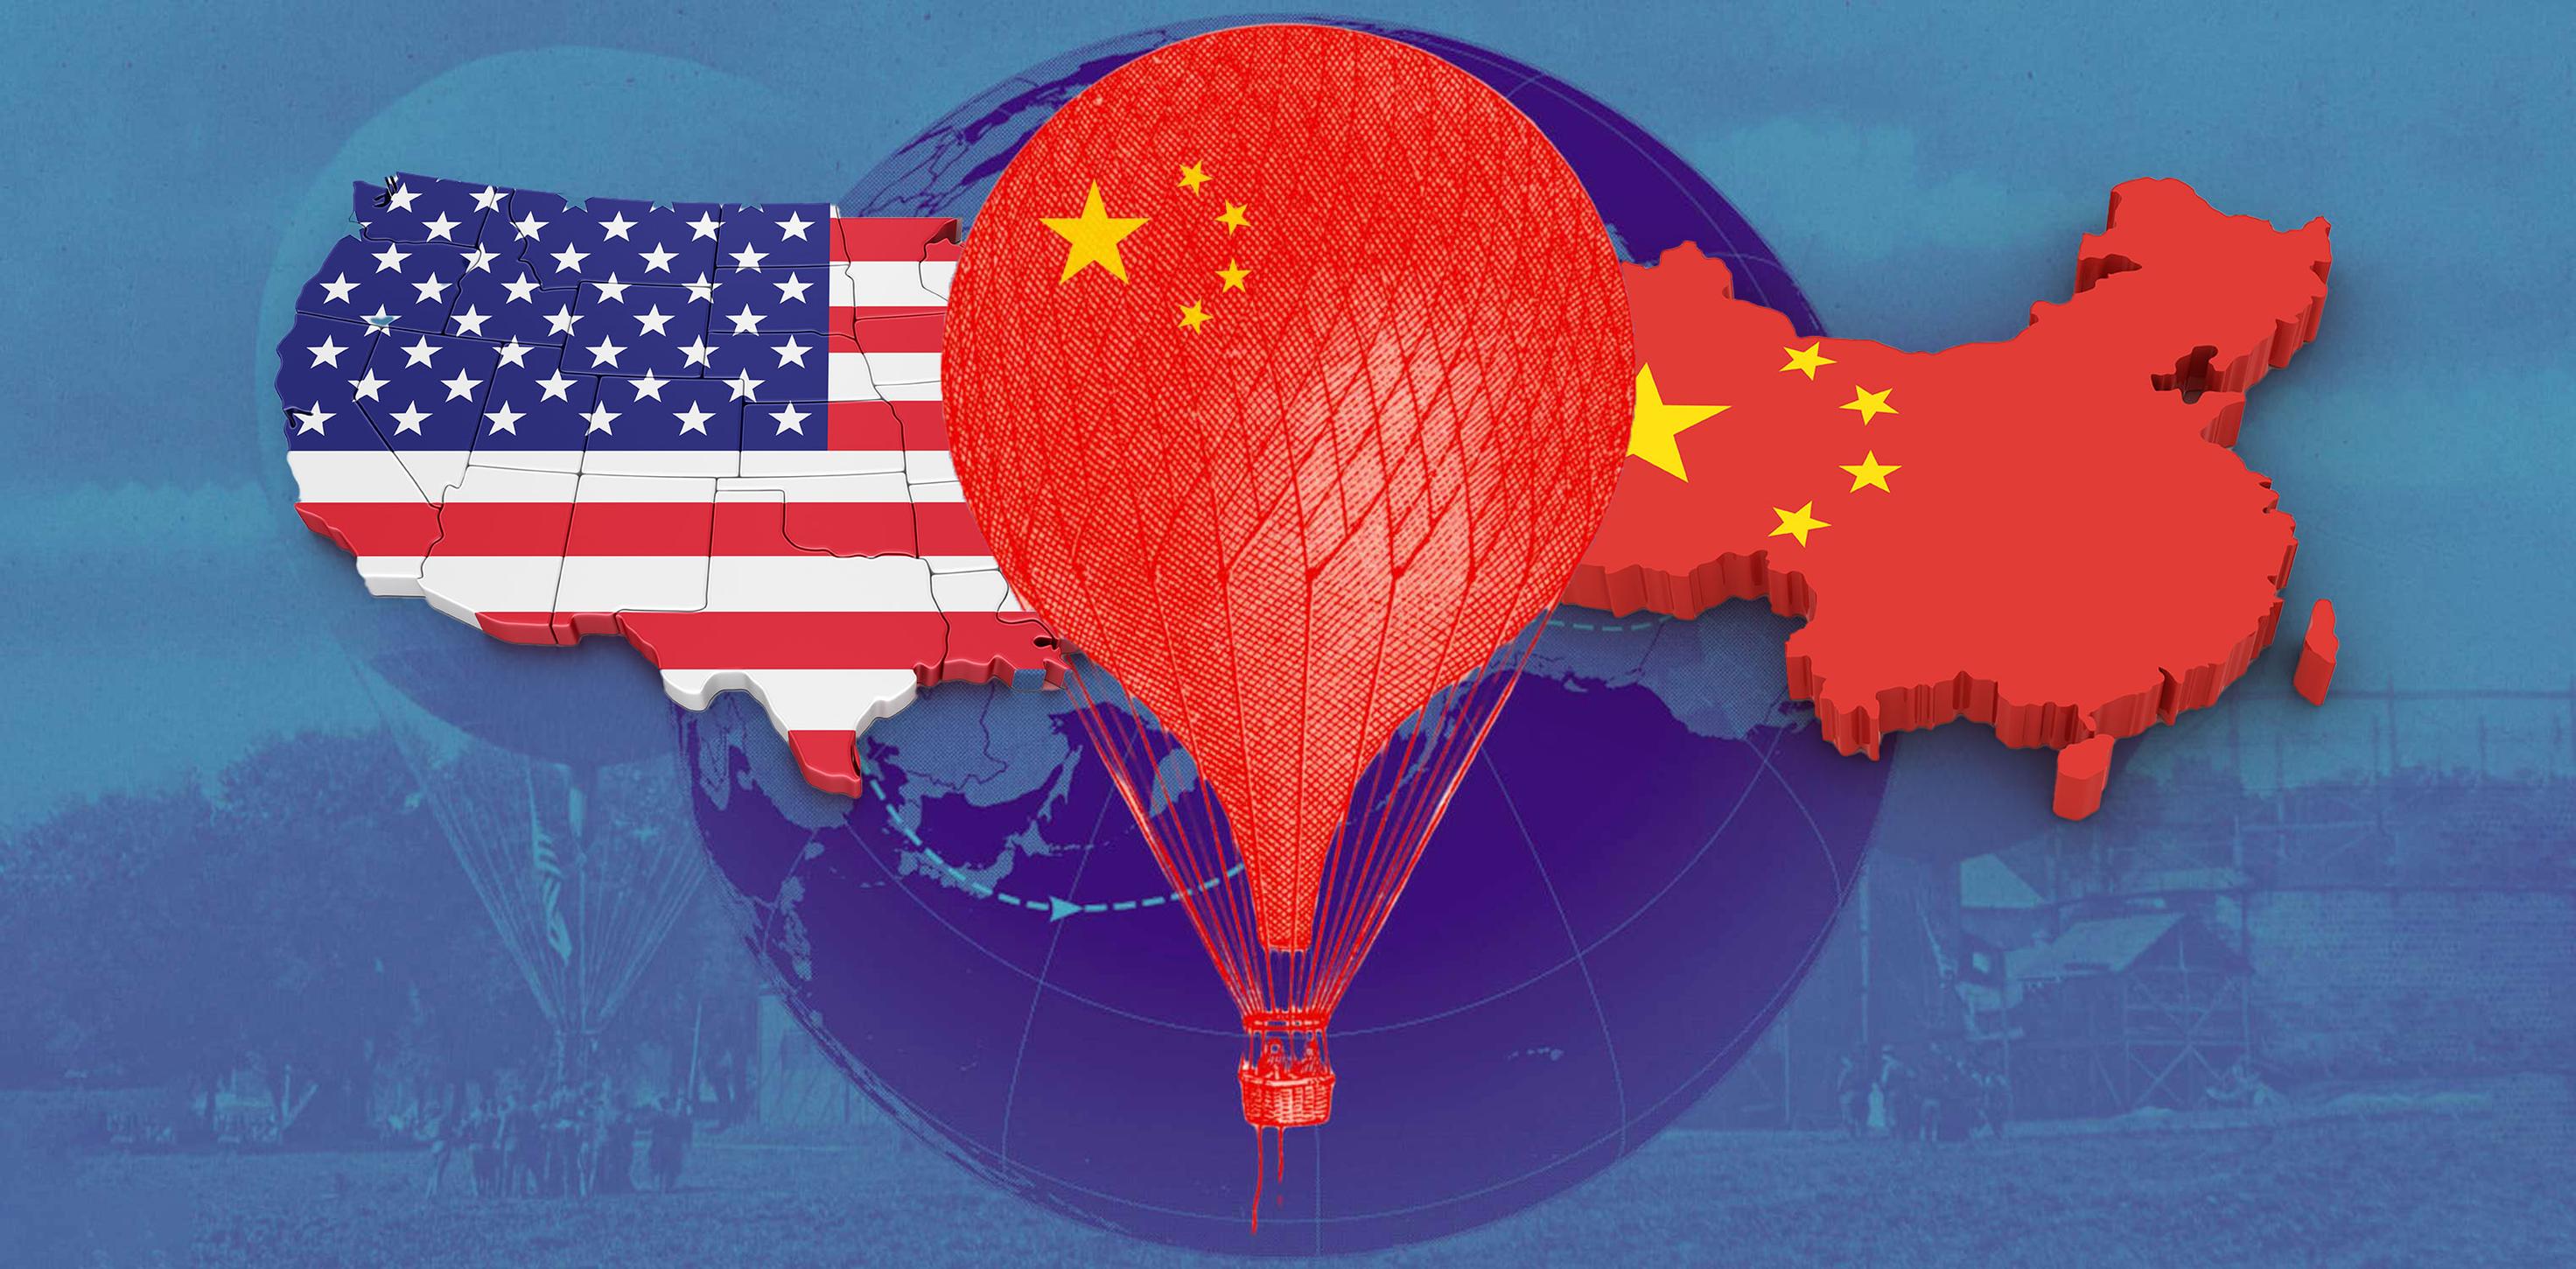 ما احتمالات التصعيد بين واشنطن وبكين بعد أزمة المنطاد الصيني؟